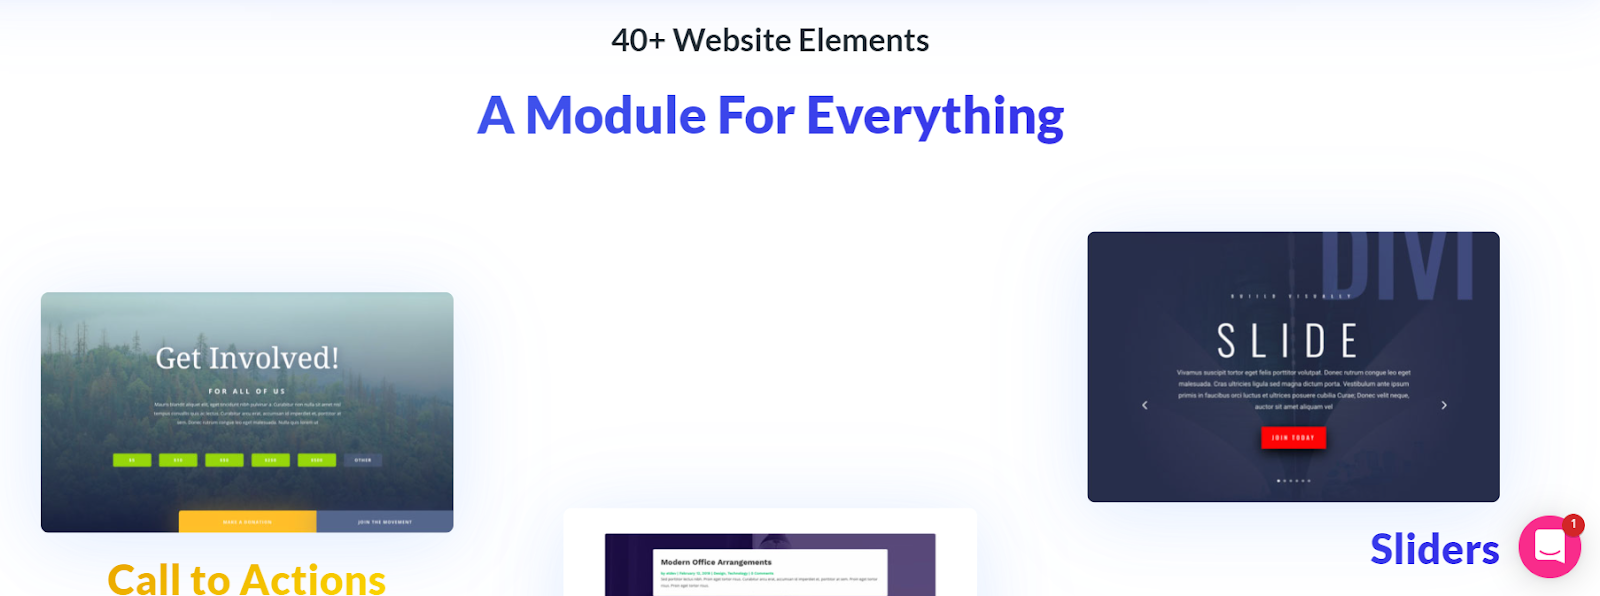 Divi Builder website elements section on its website